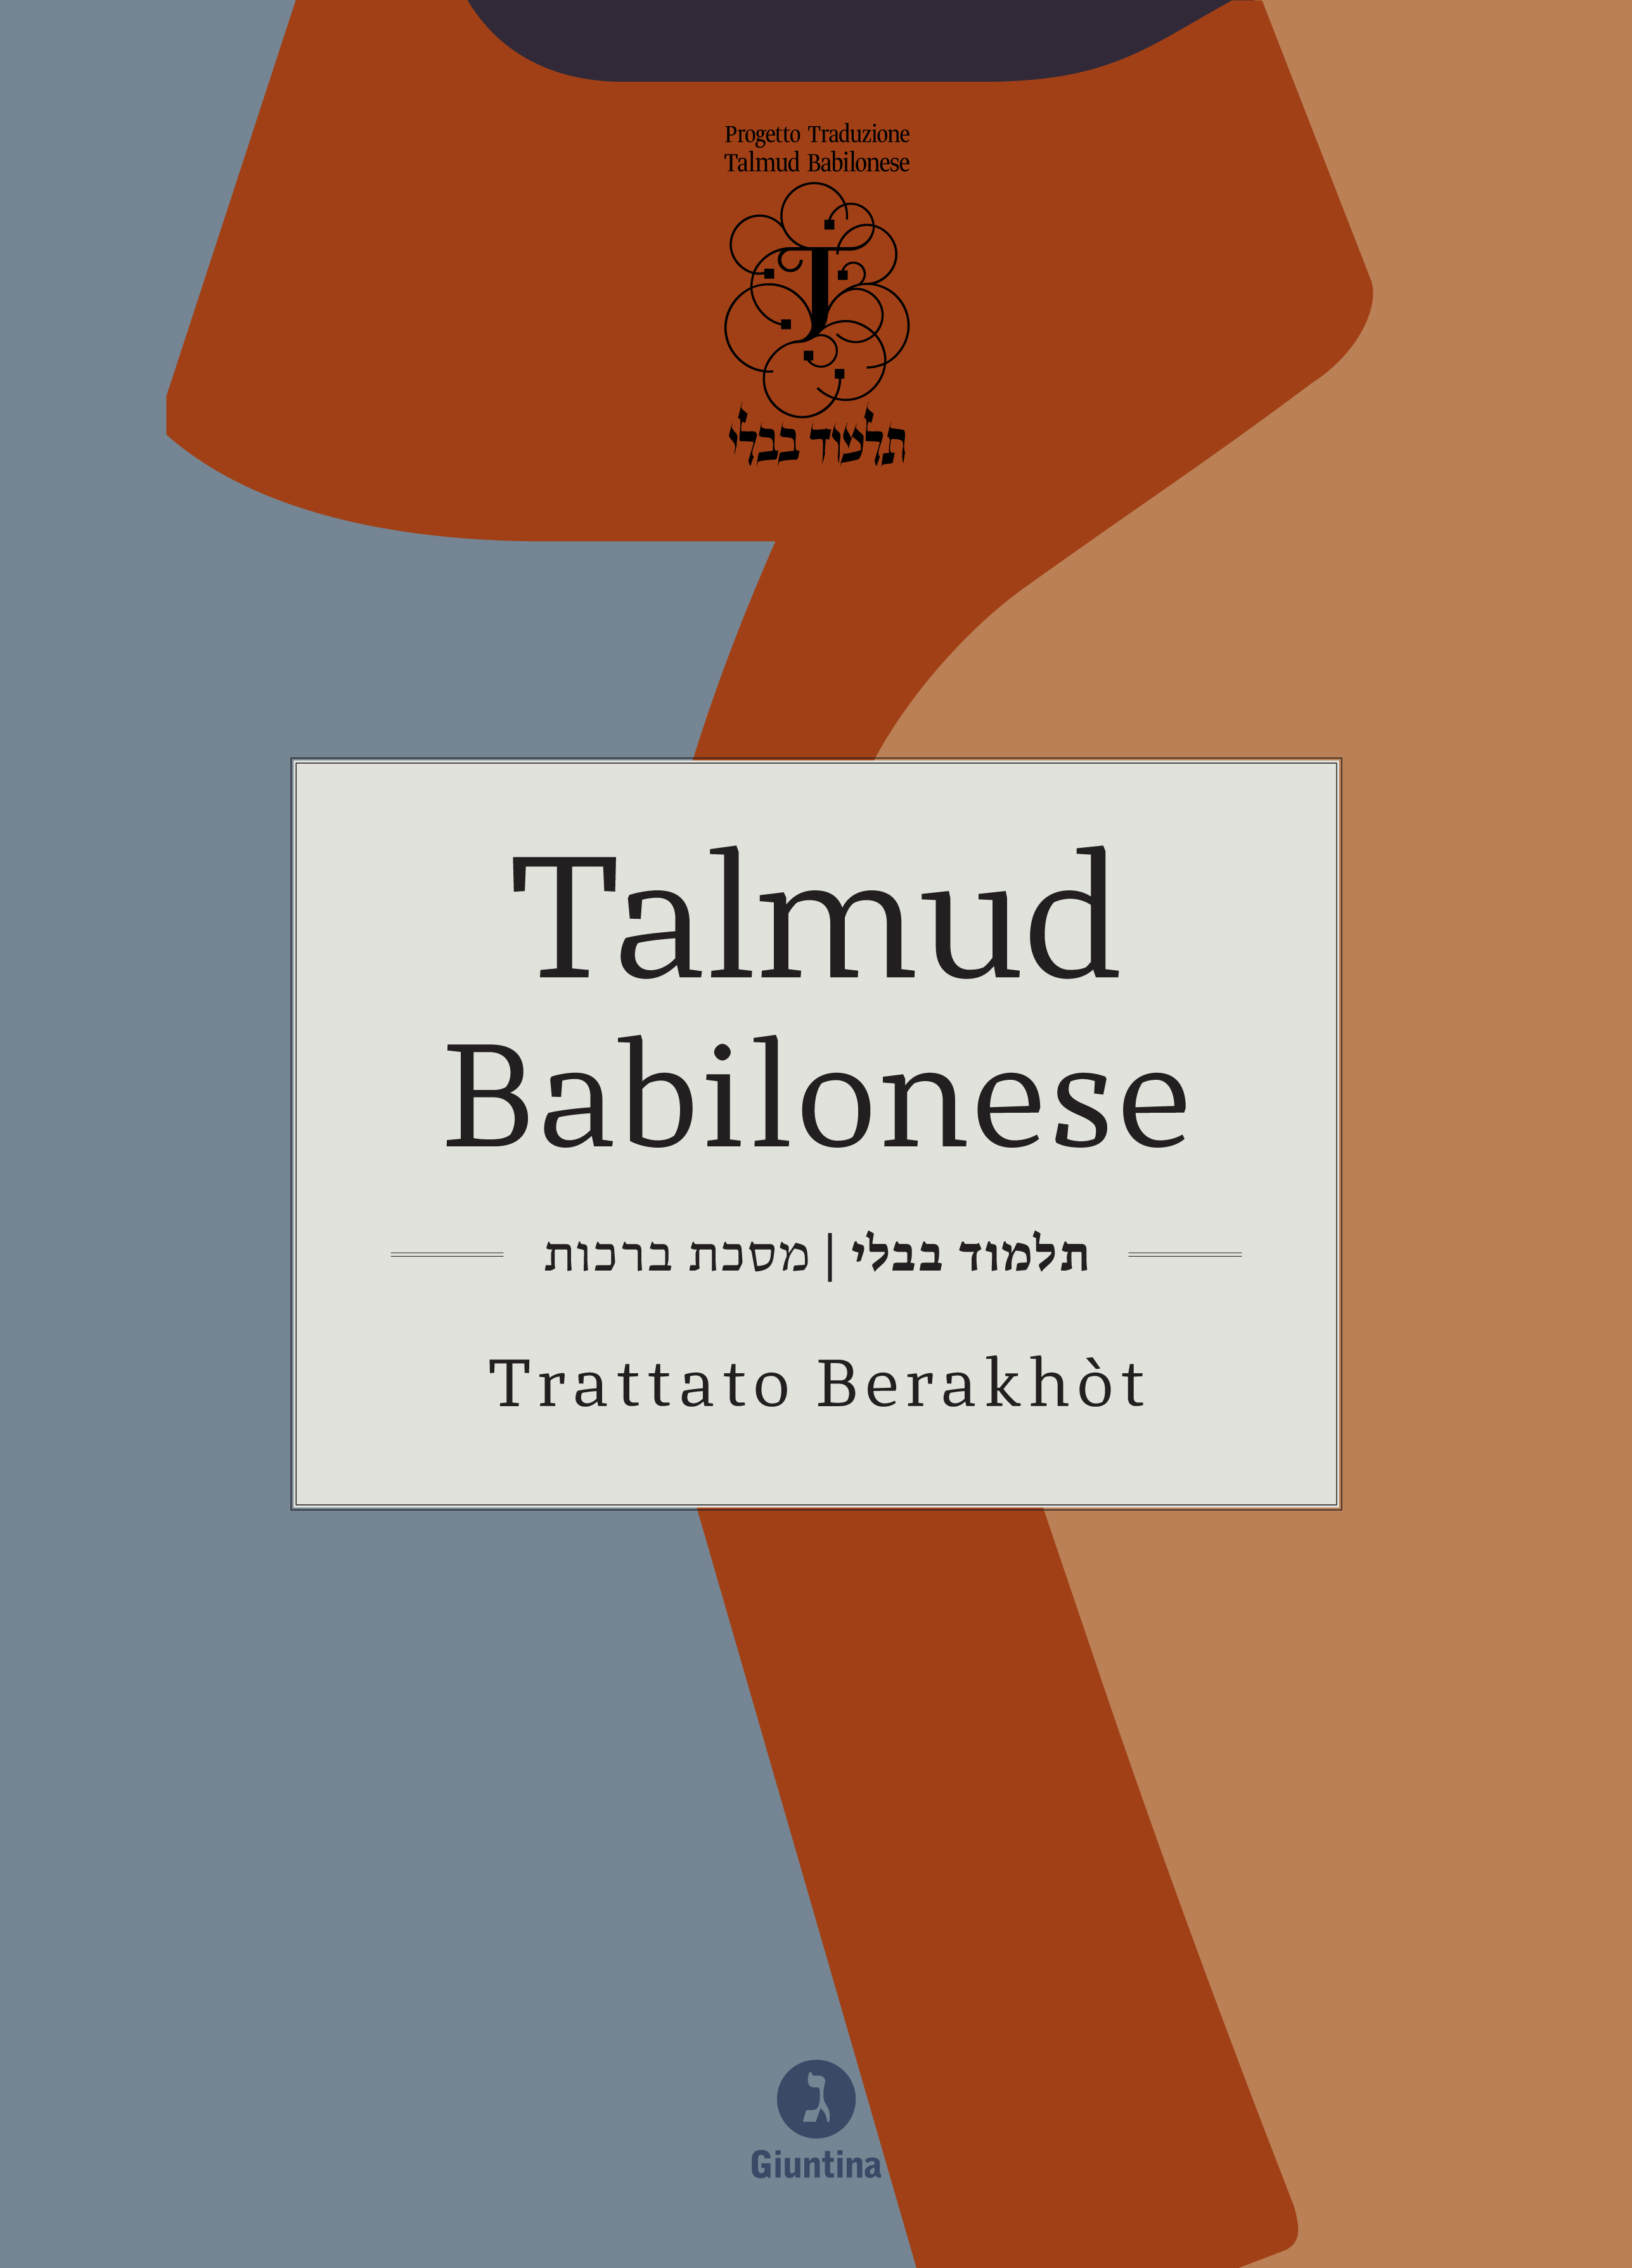 Talmud Babilonese 2 volumi indivisibili